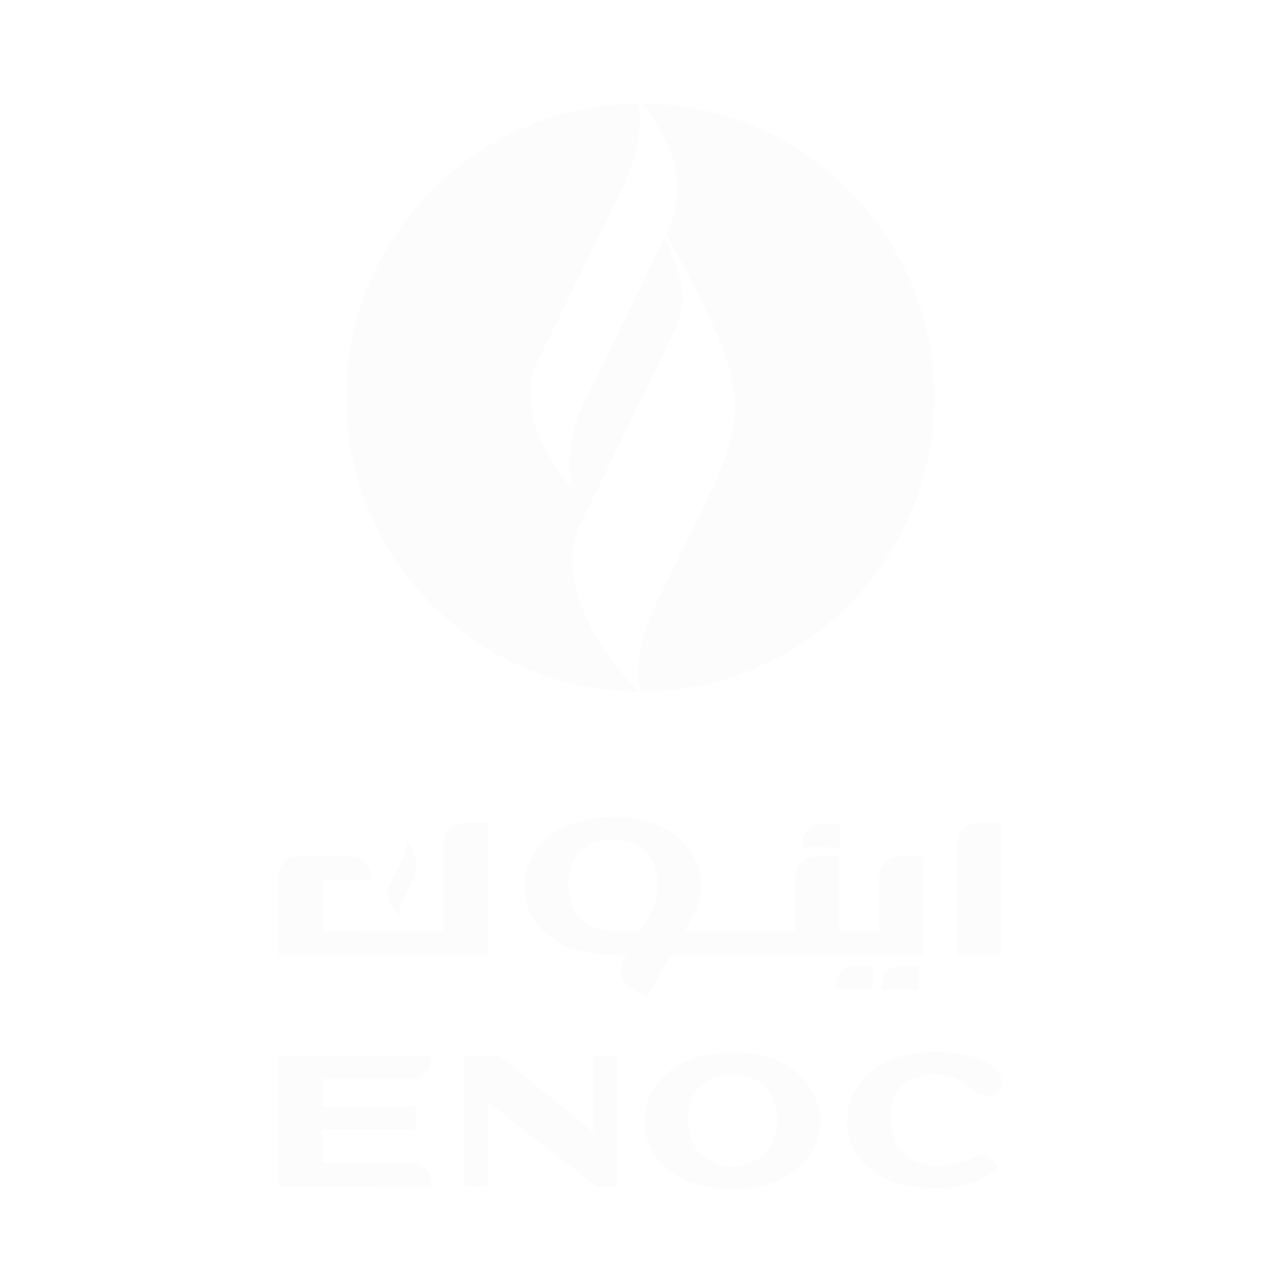 enoc-logo